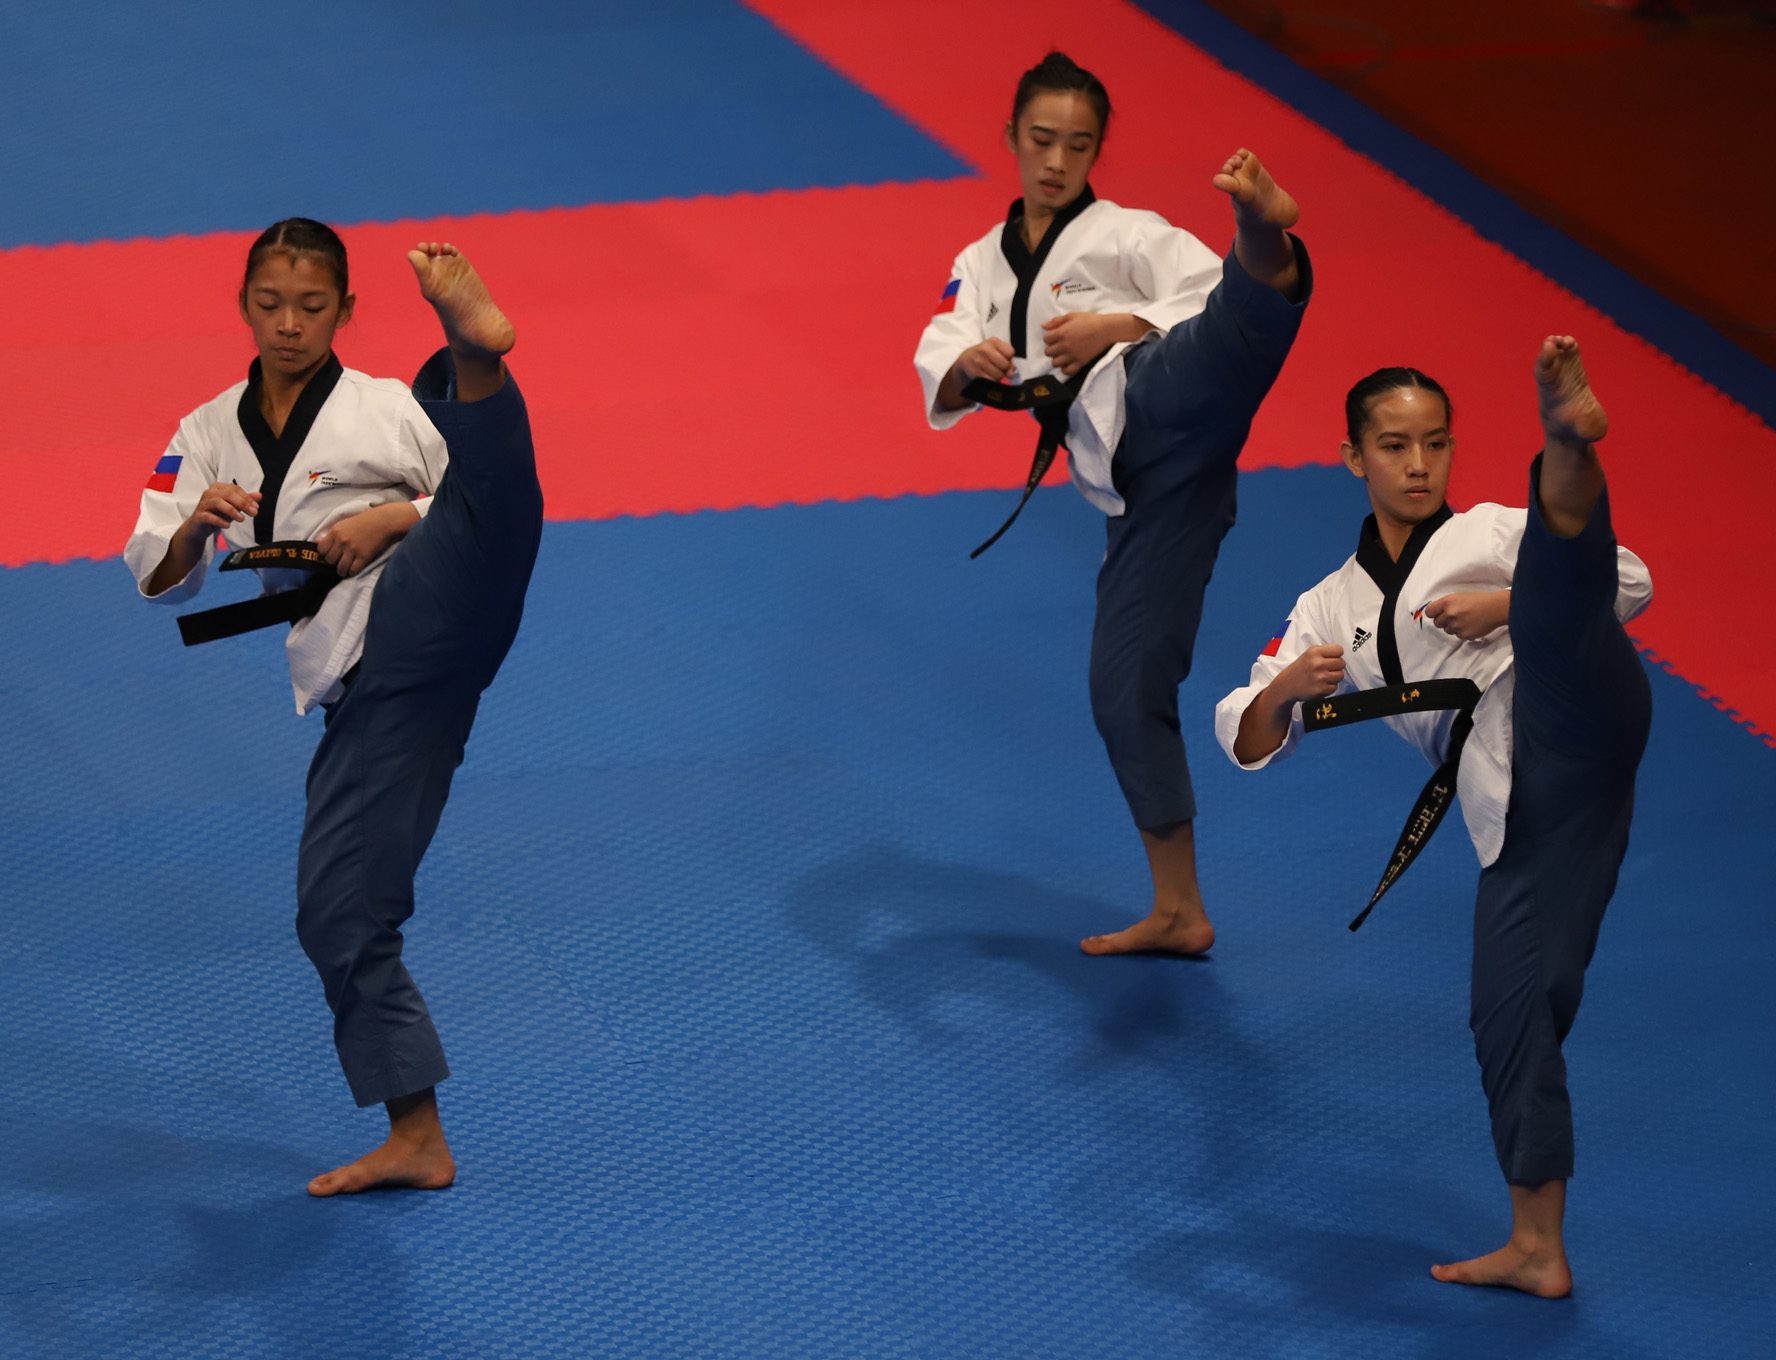 PH women’s poomsae team nabs bronze in 2018 Asian Games